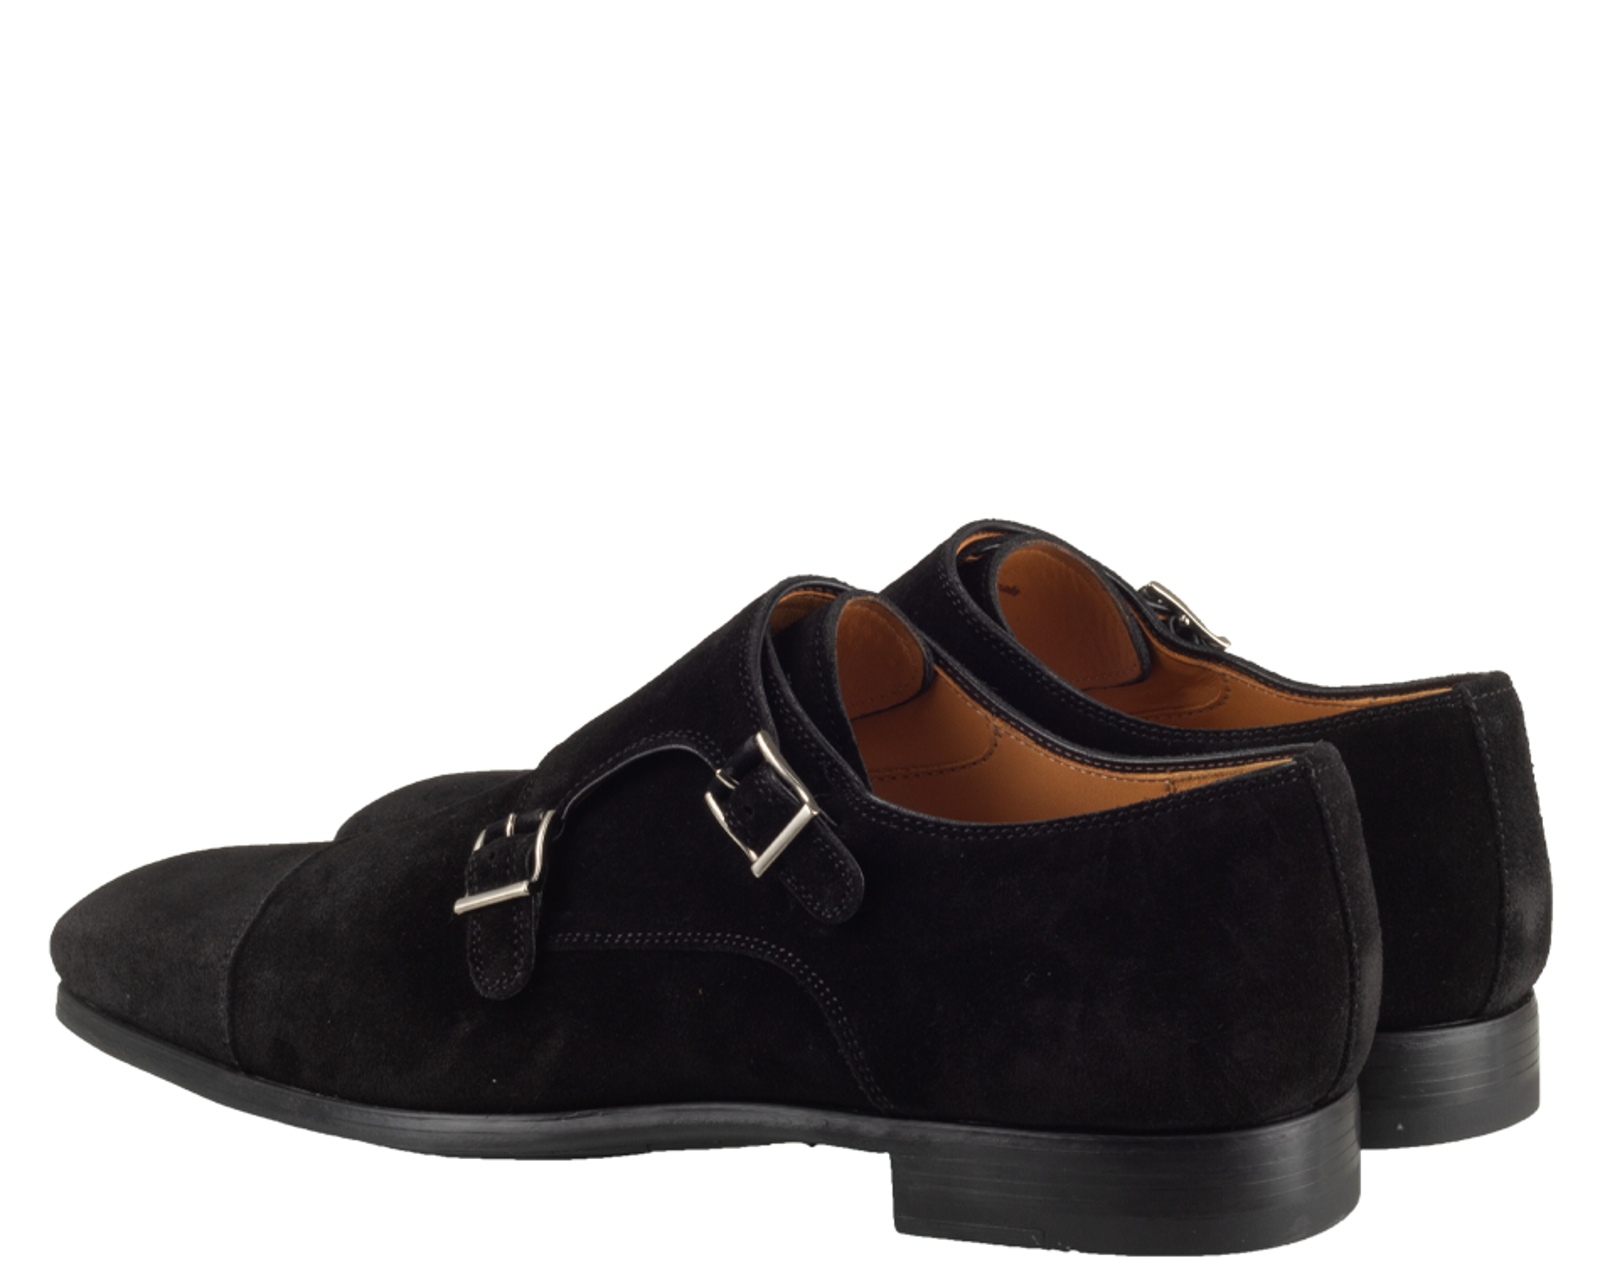 Magnanni 15330 Monk strap shoes | MONFRANCE shoes Maastricht